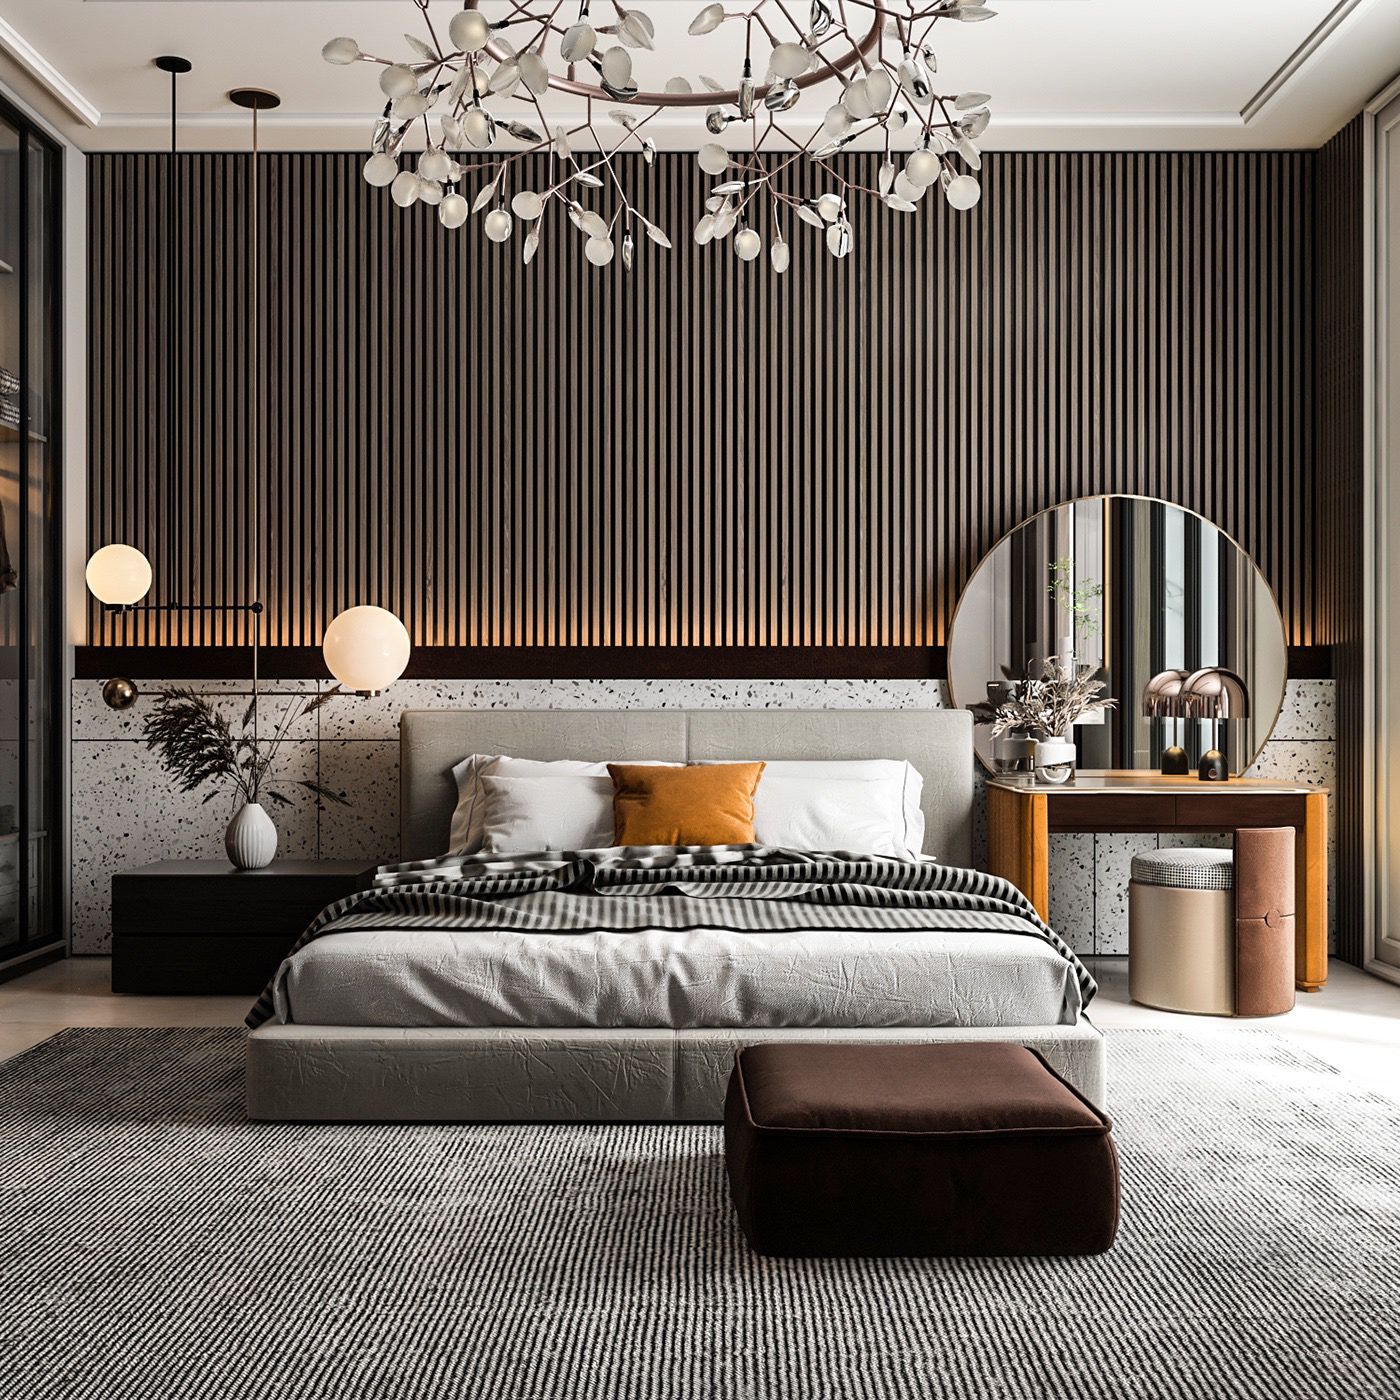 Bedroom design modern